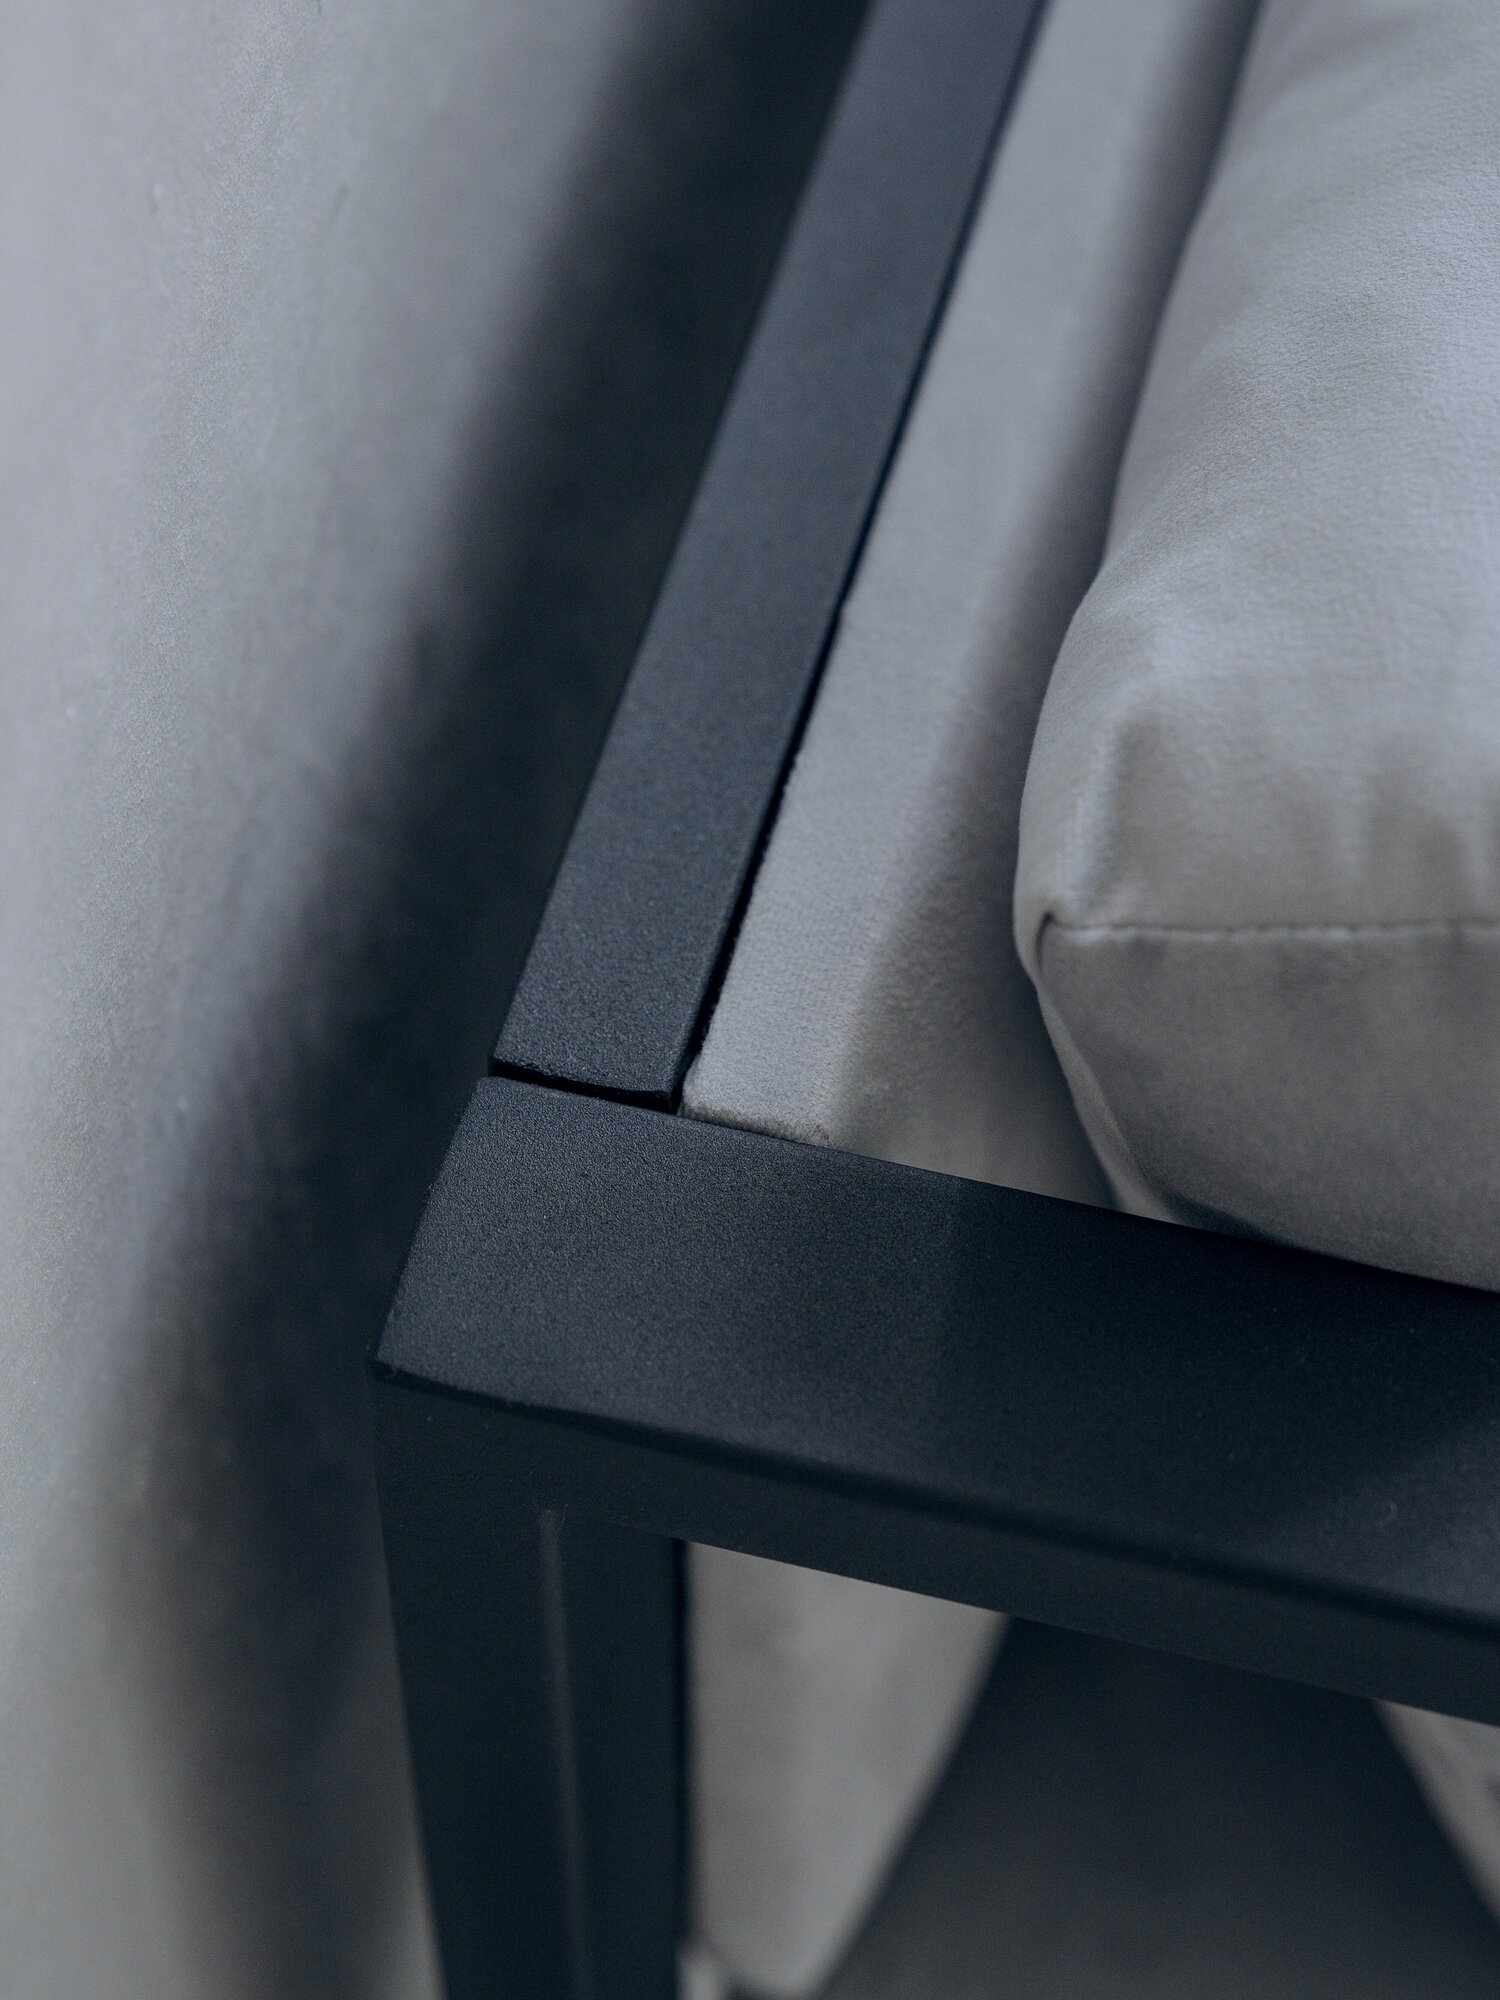 Кресло лофт Curl 70х70, обивка: велюр цвет: серый, в гостиную, офис, кафе, холл, зал ожидания, на кухню - фотография № 5